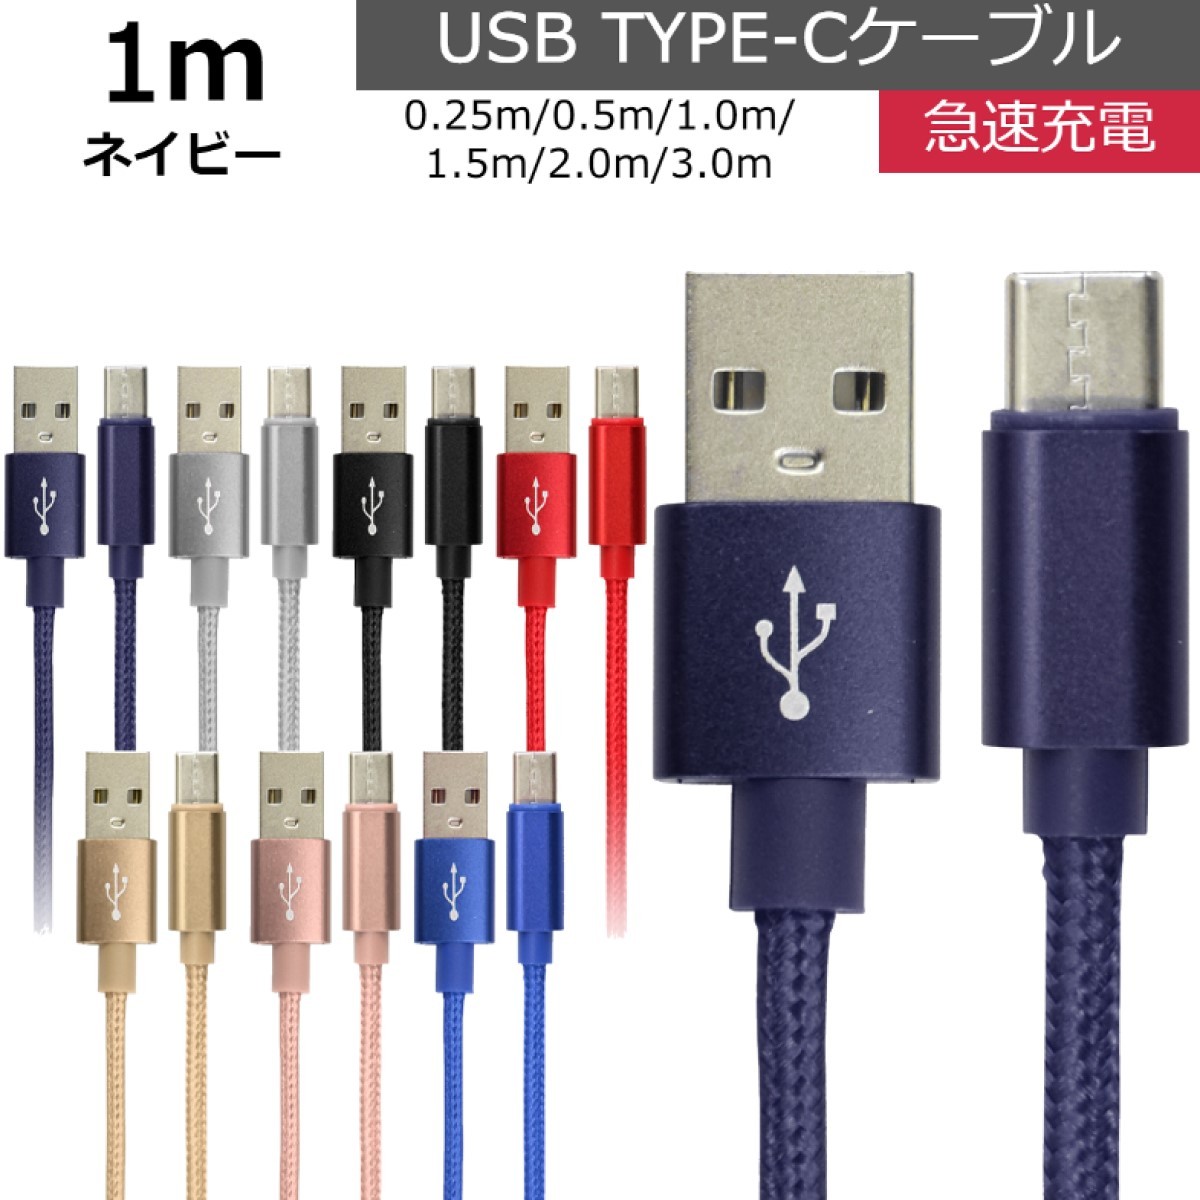 未使用 USB type-C ケーブル ネイビー 1m iPhone iPad airpods 充電 データ転送_画像1